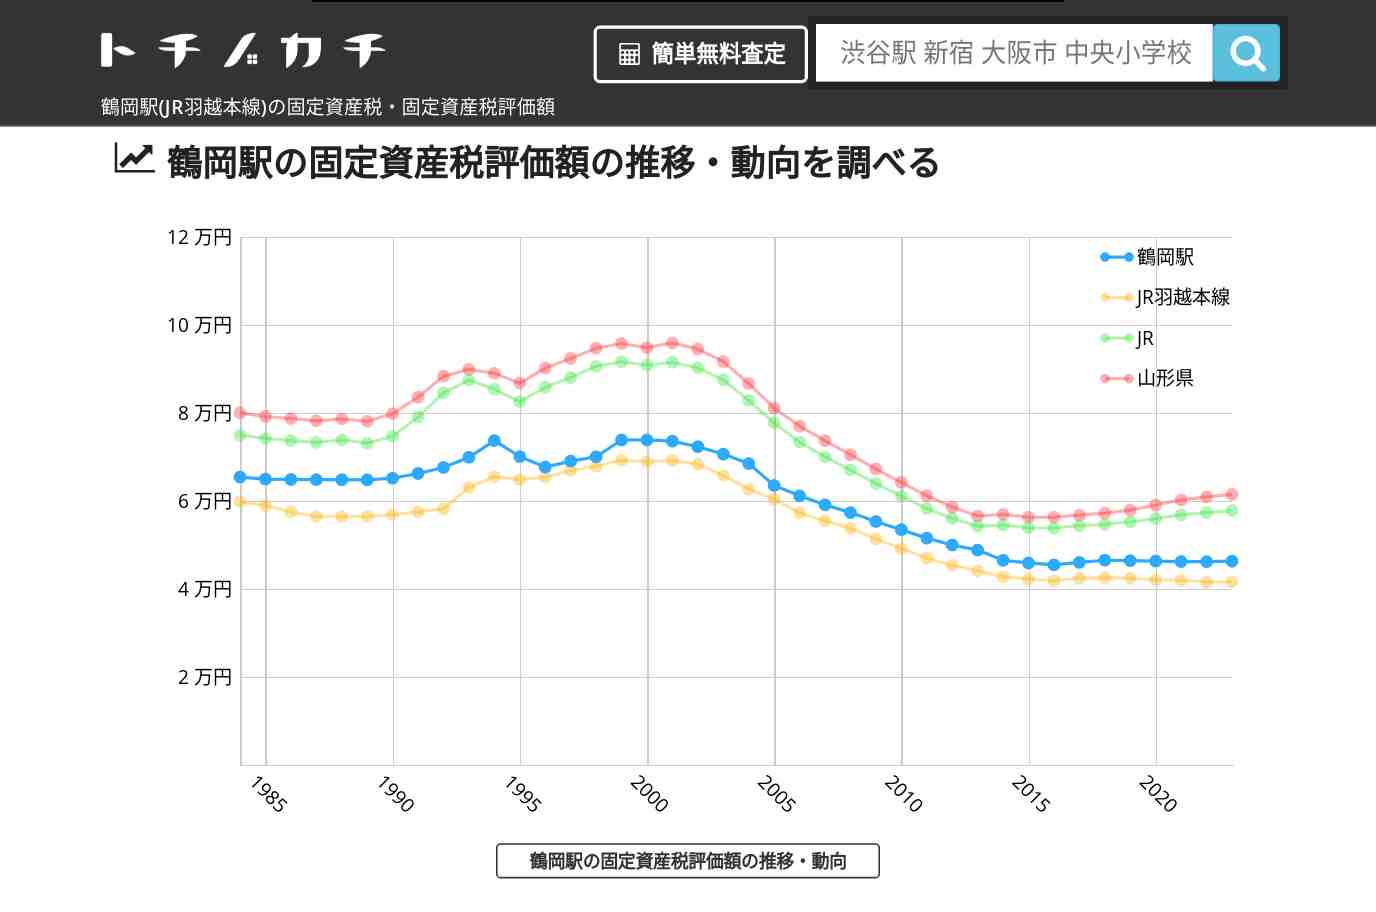 鶴岡駅(JR羽越本線)の固定資産税・固定資産税評価額 | トチノカチ